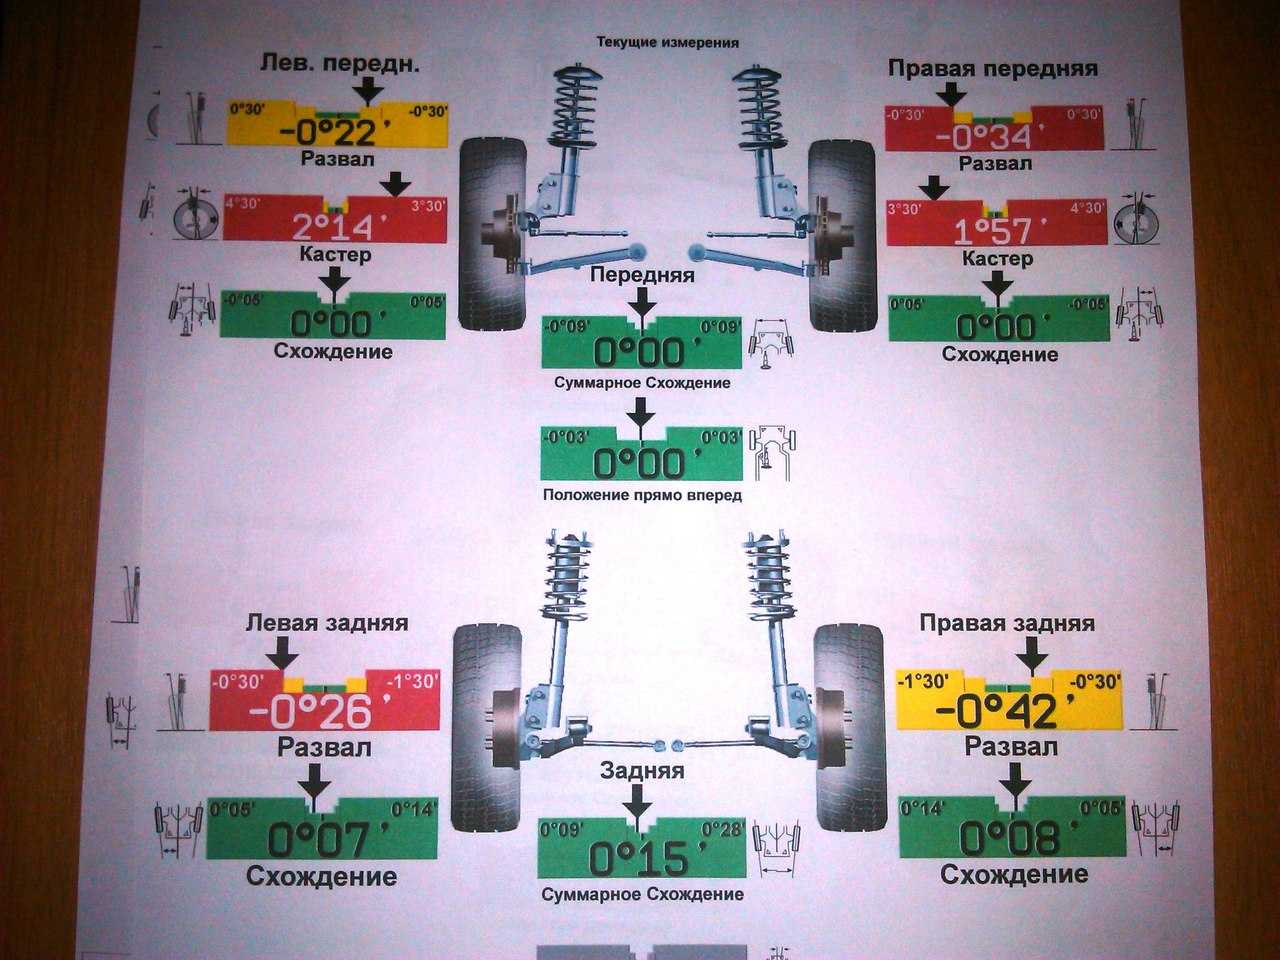 Различные параметры углов установки колес, регулировка и проверка